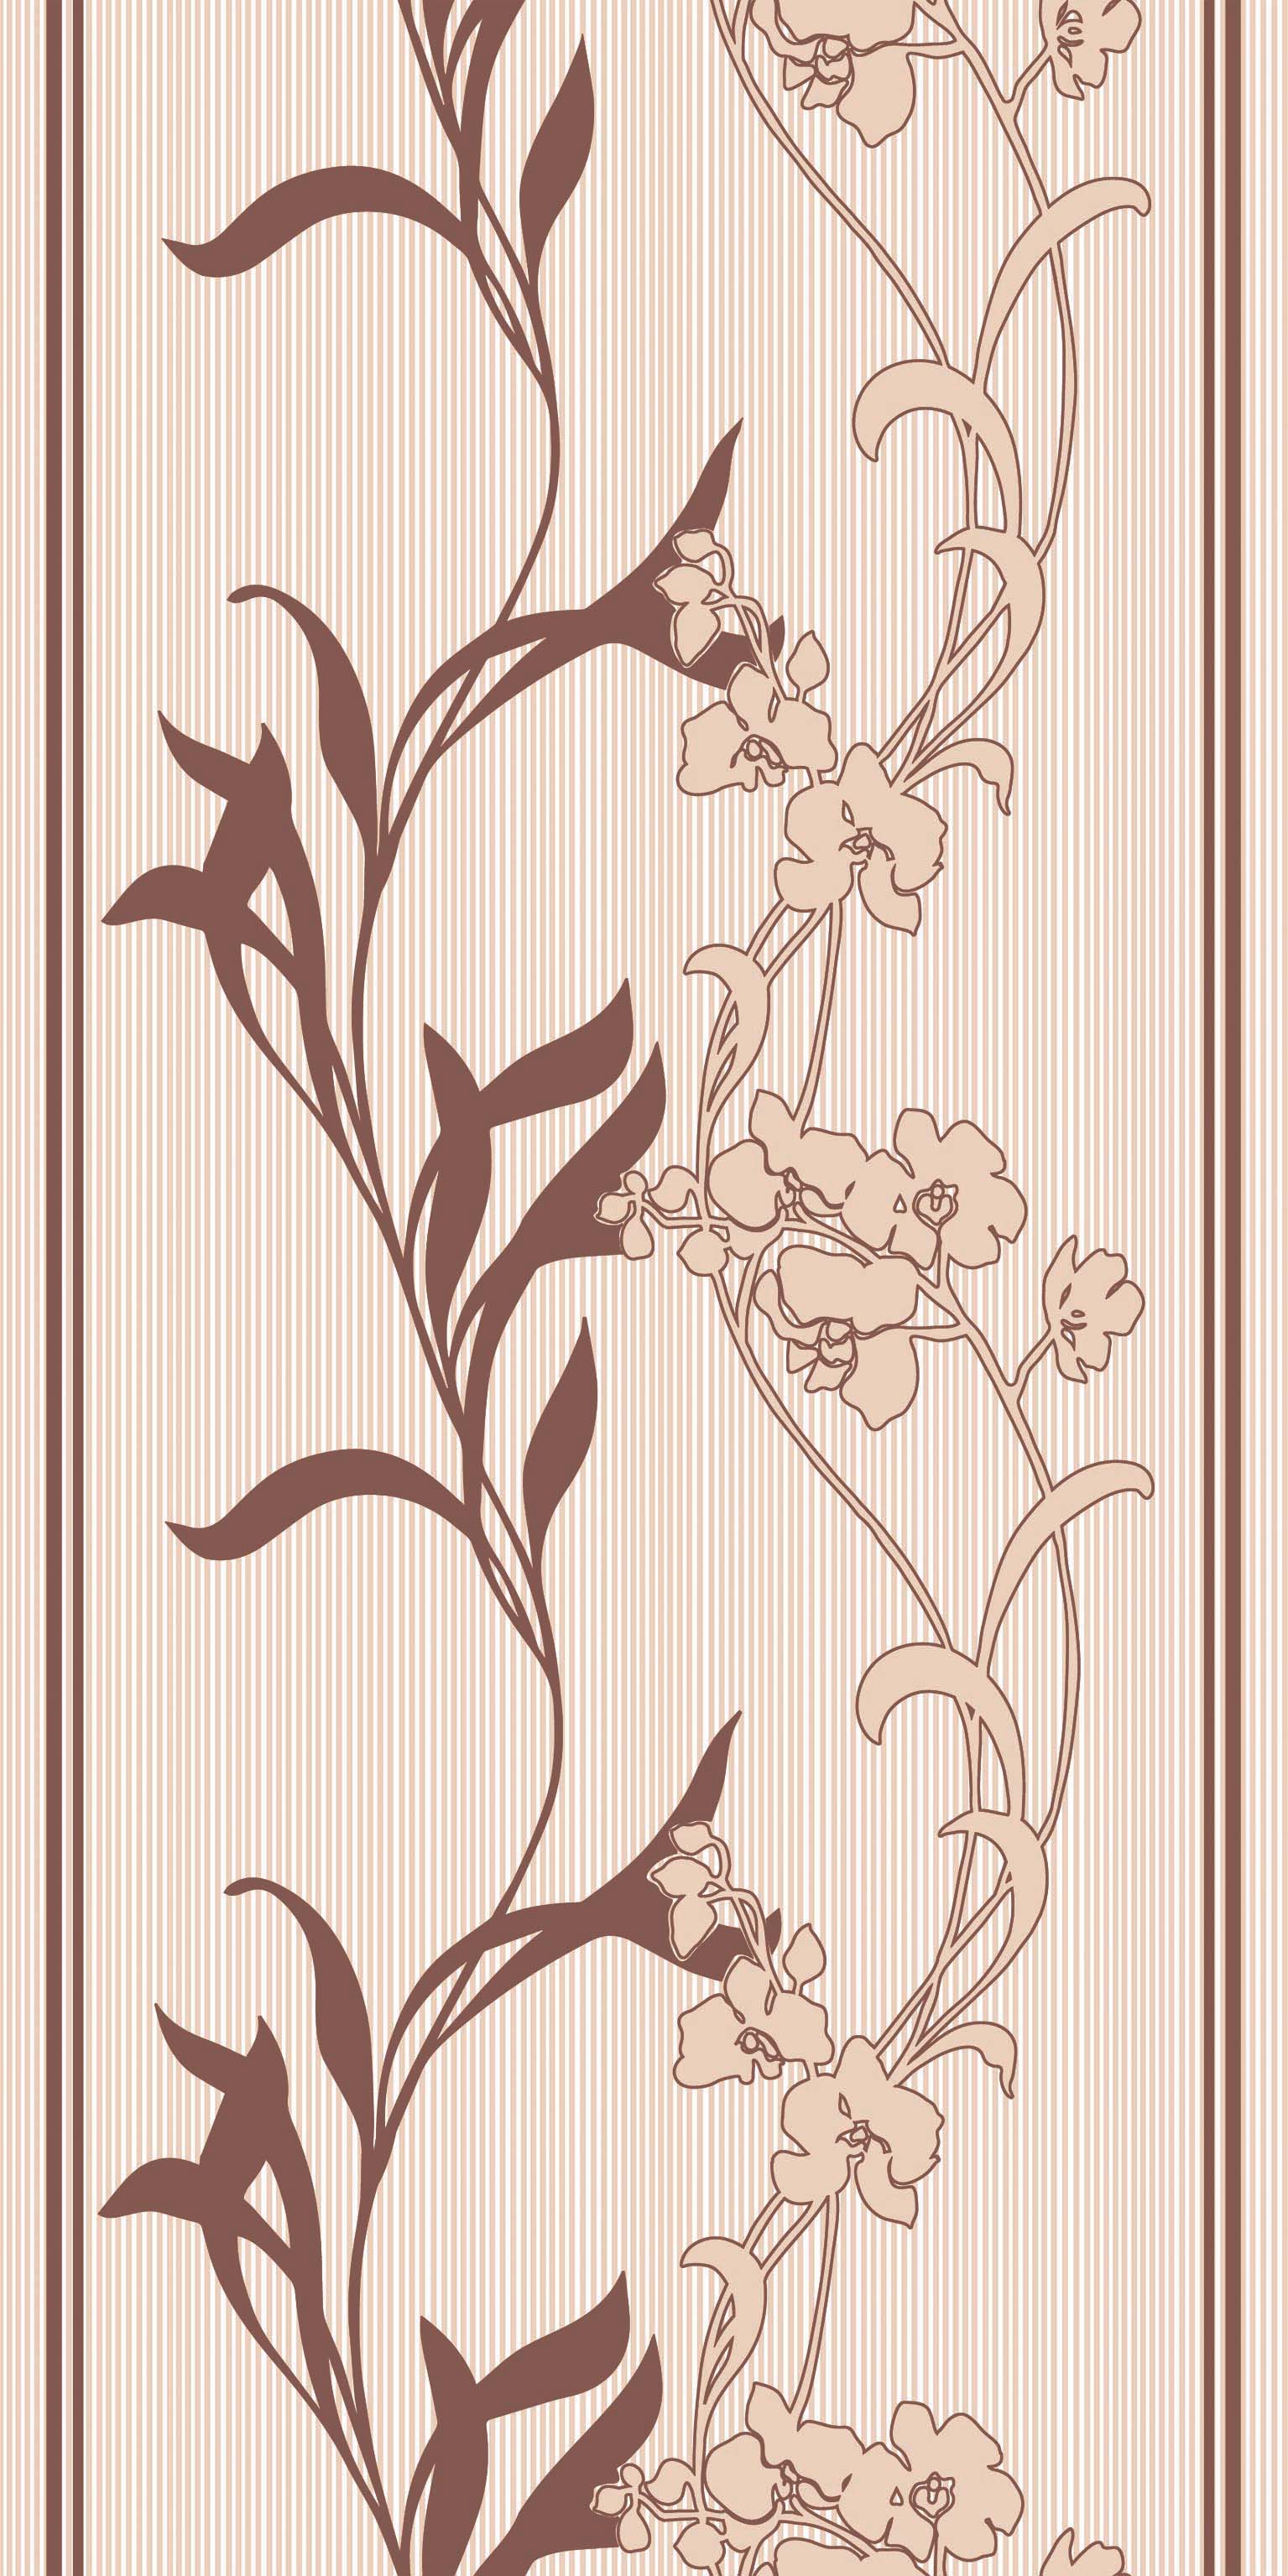 Пленка для термопереноса 339-4 орхидеи персик из коллекции Freedom